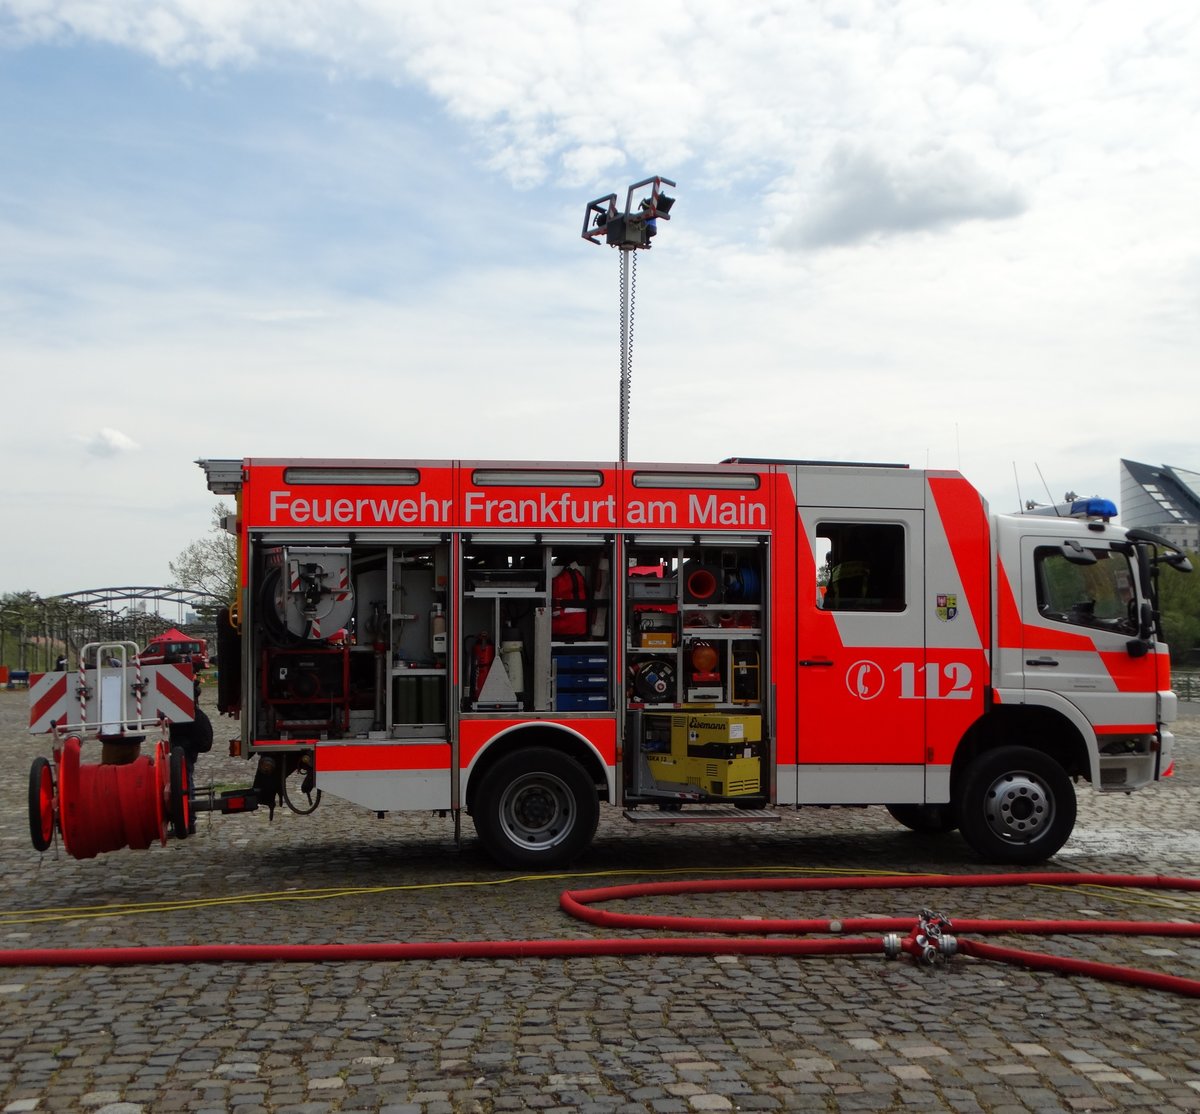 Feuerwehr Frankfurt am Main (Stadtteil Sindlingen) Mercedes Benz Atgeo LF20 am 30.04.16 am Mainufer. Diese Fahrzeuge waren bis 2013 noch bei der BF Frankfurt